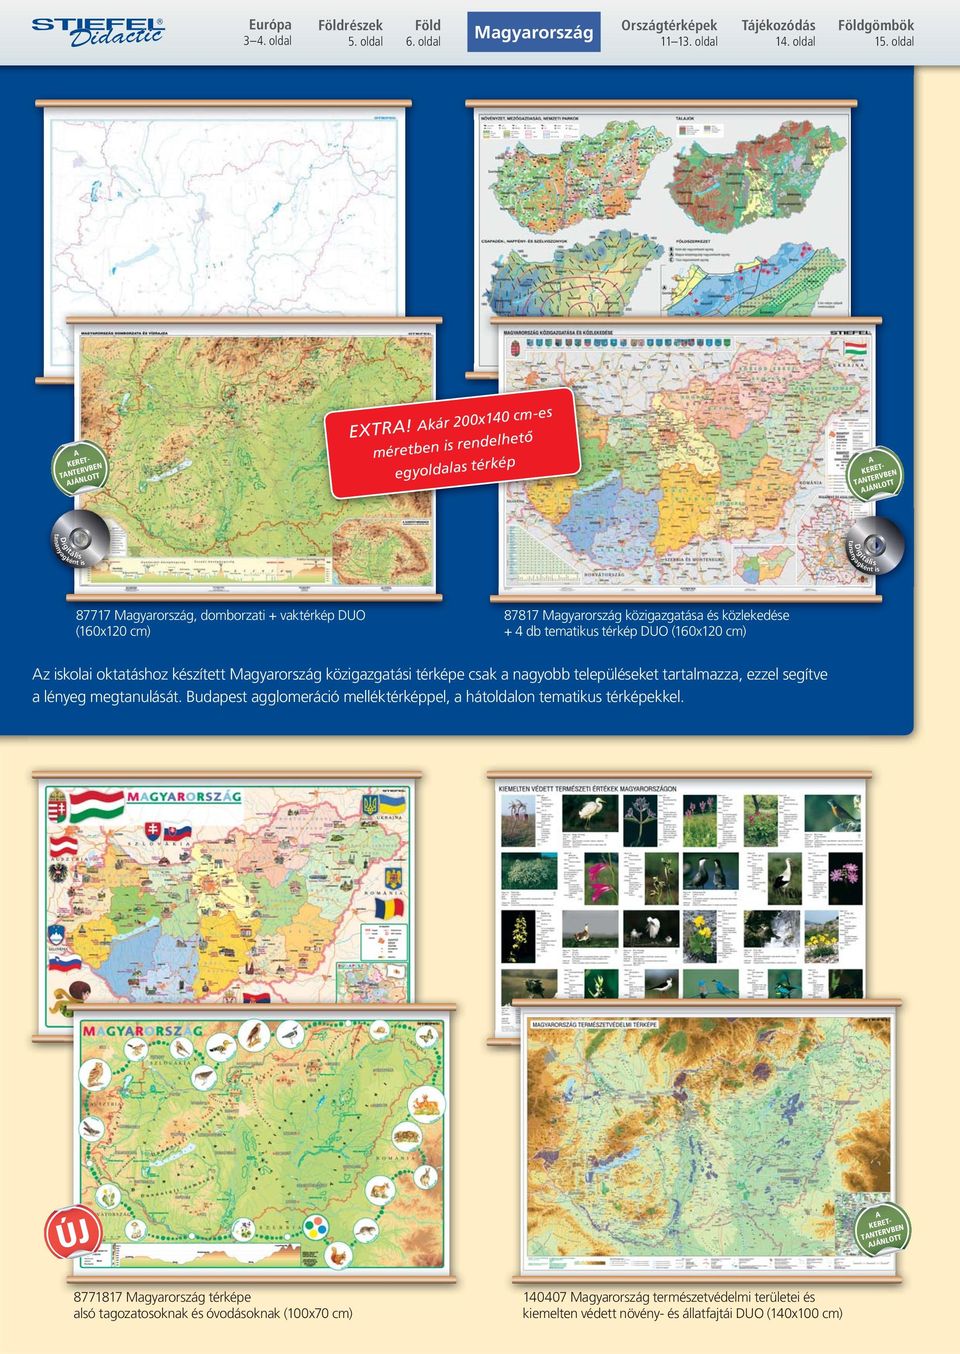 4 db tematikus térkép DUO (160x120 cm) z iskolai oktatáshoz készített Magyarország közigazgatási térképe csak a nagyobb településeket tartalmazza, ezzel segítve a lényeg megtanulását.